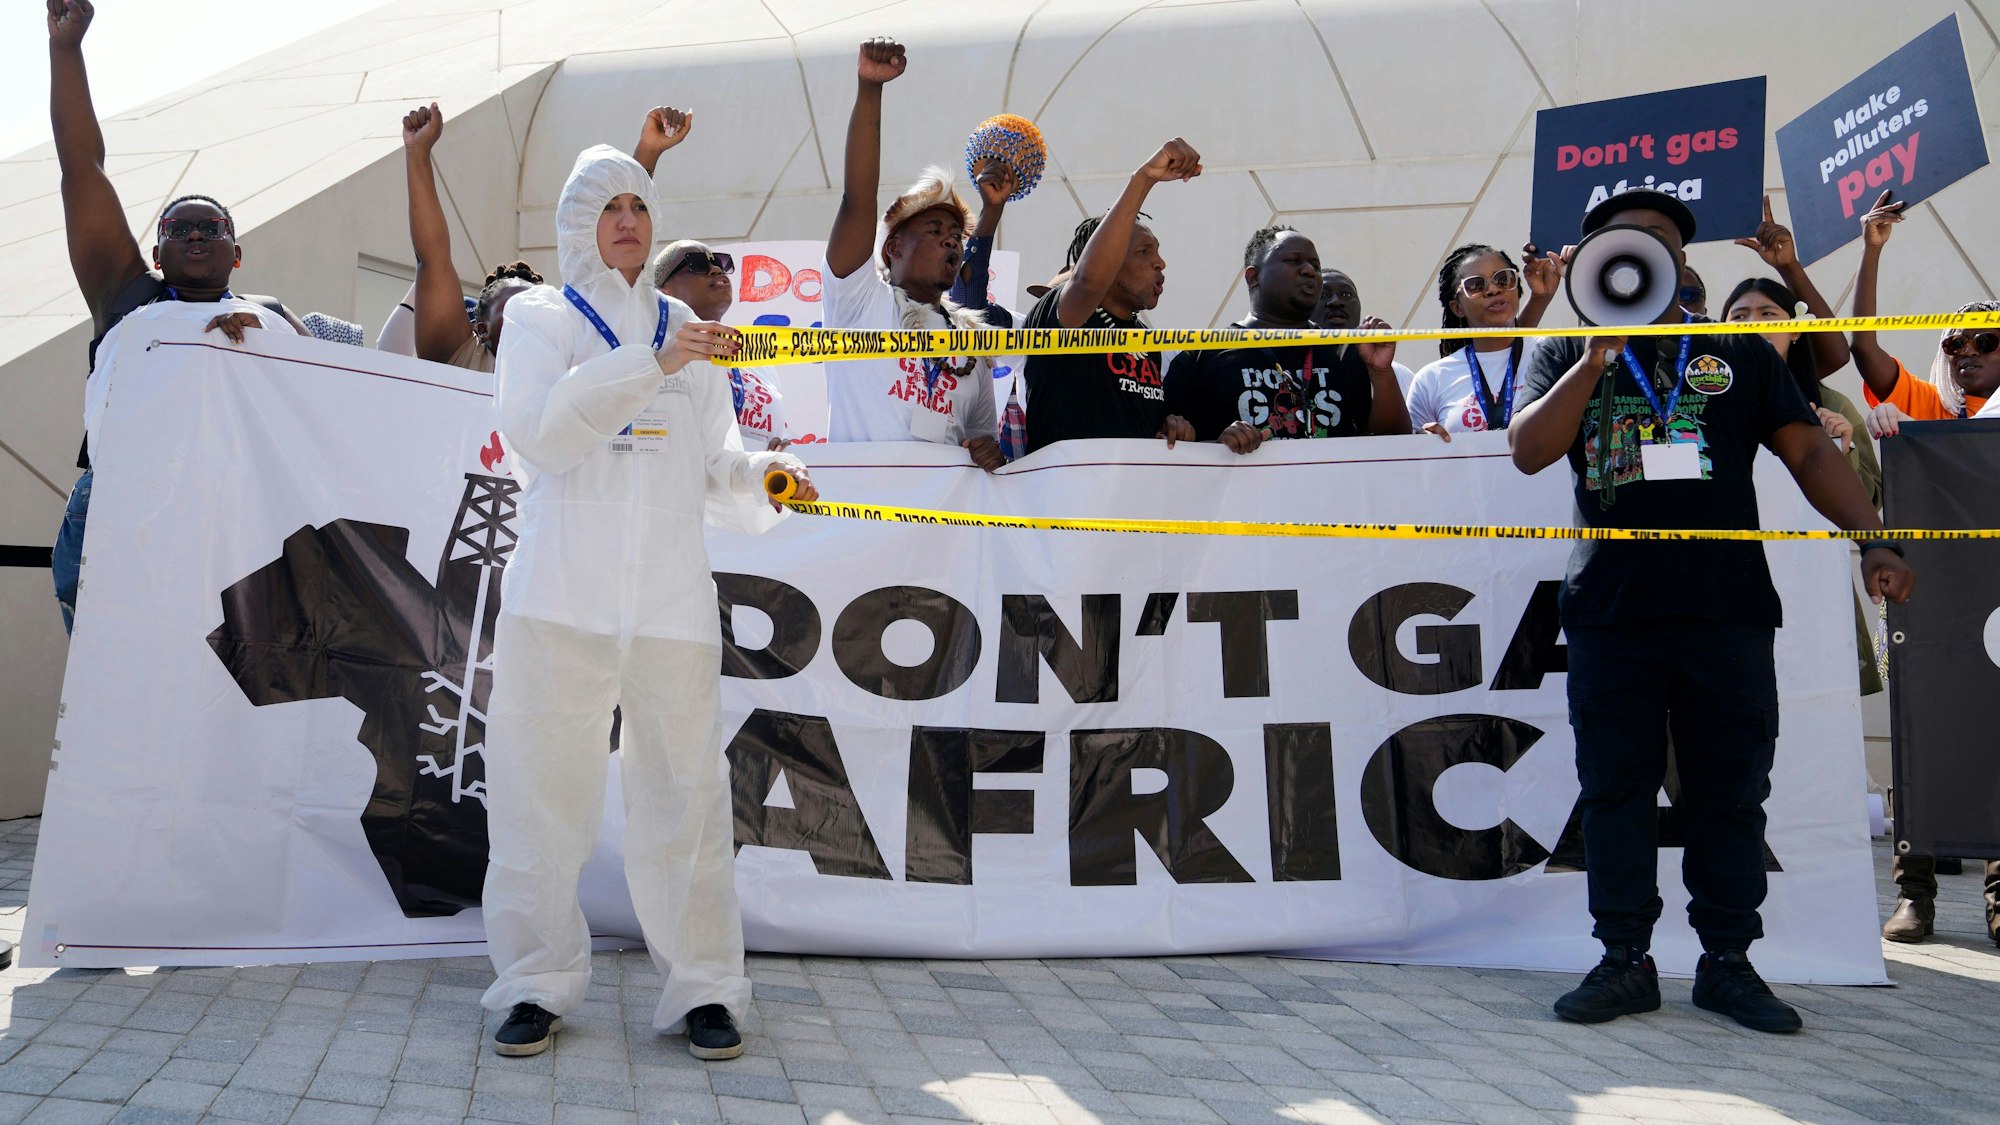 Aktivisten halten auf einer Demonstration während der Weltklimakonferenz Plakate und Transparente mit der Aufschrift „Don't gas Africa“ und „Make polluters pay“ in die Höhe.